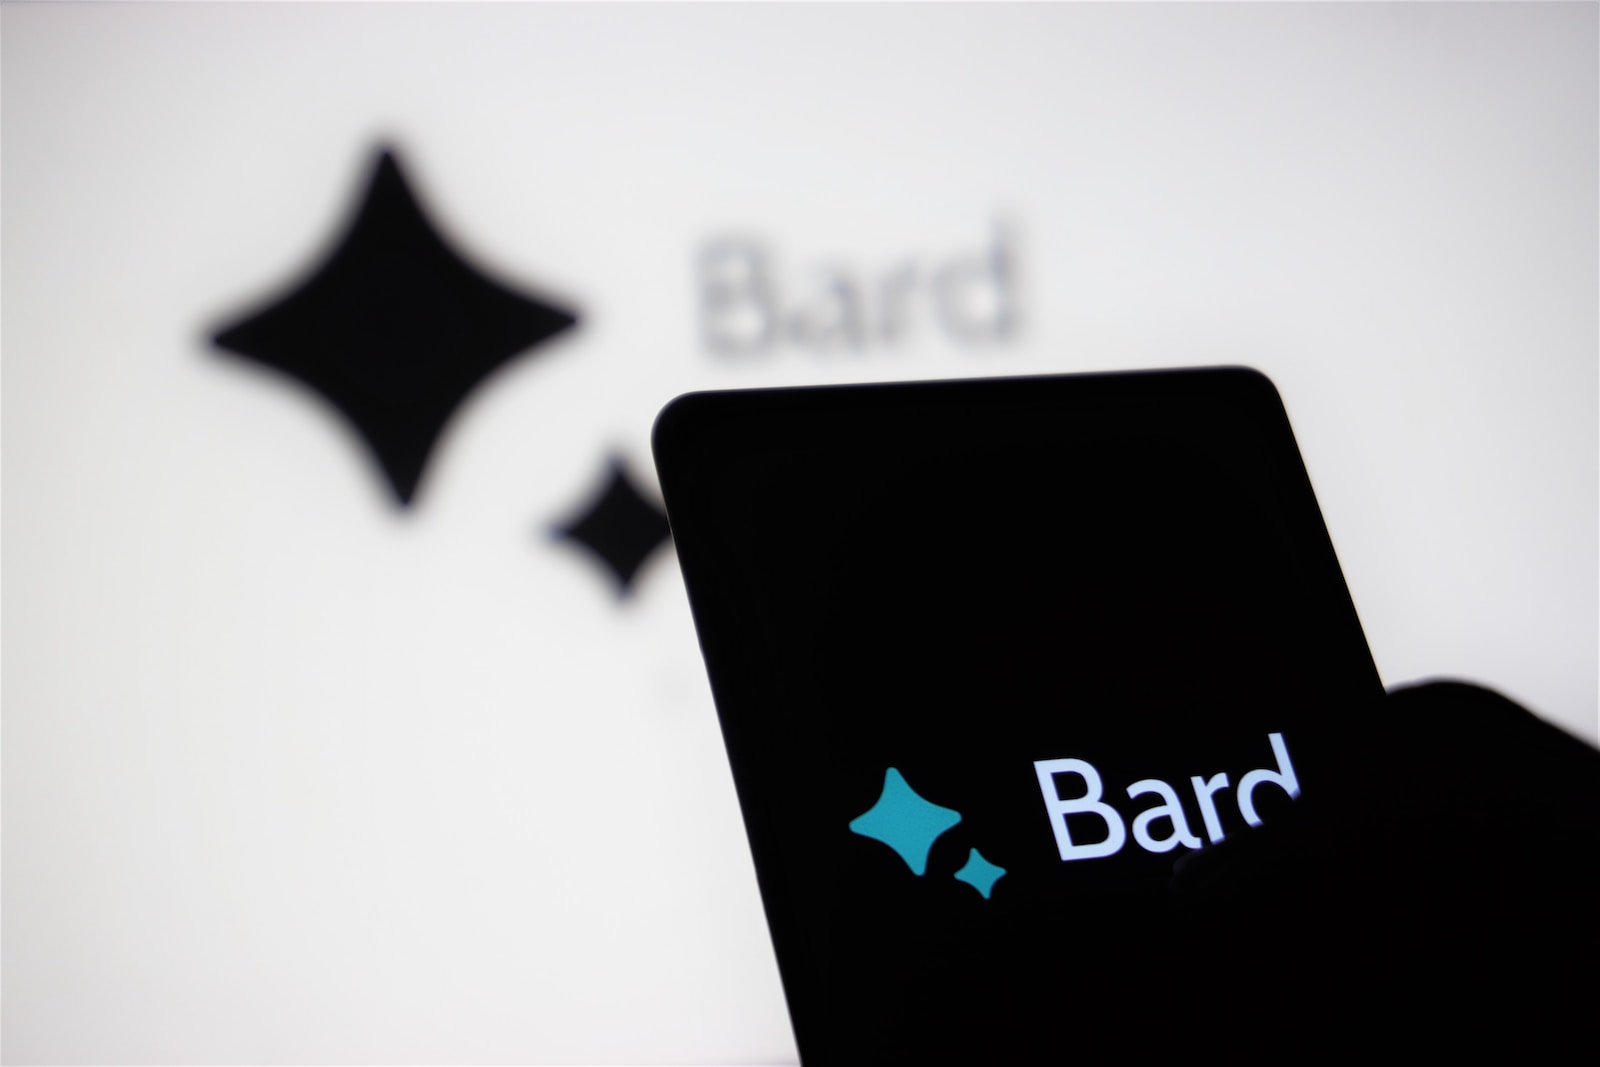 Bard va être intégré à toutes les applications et services Google